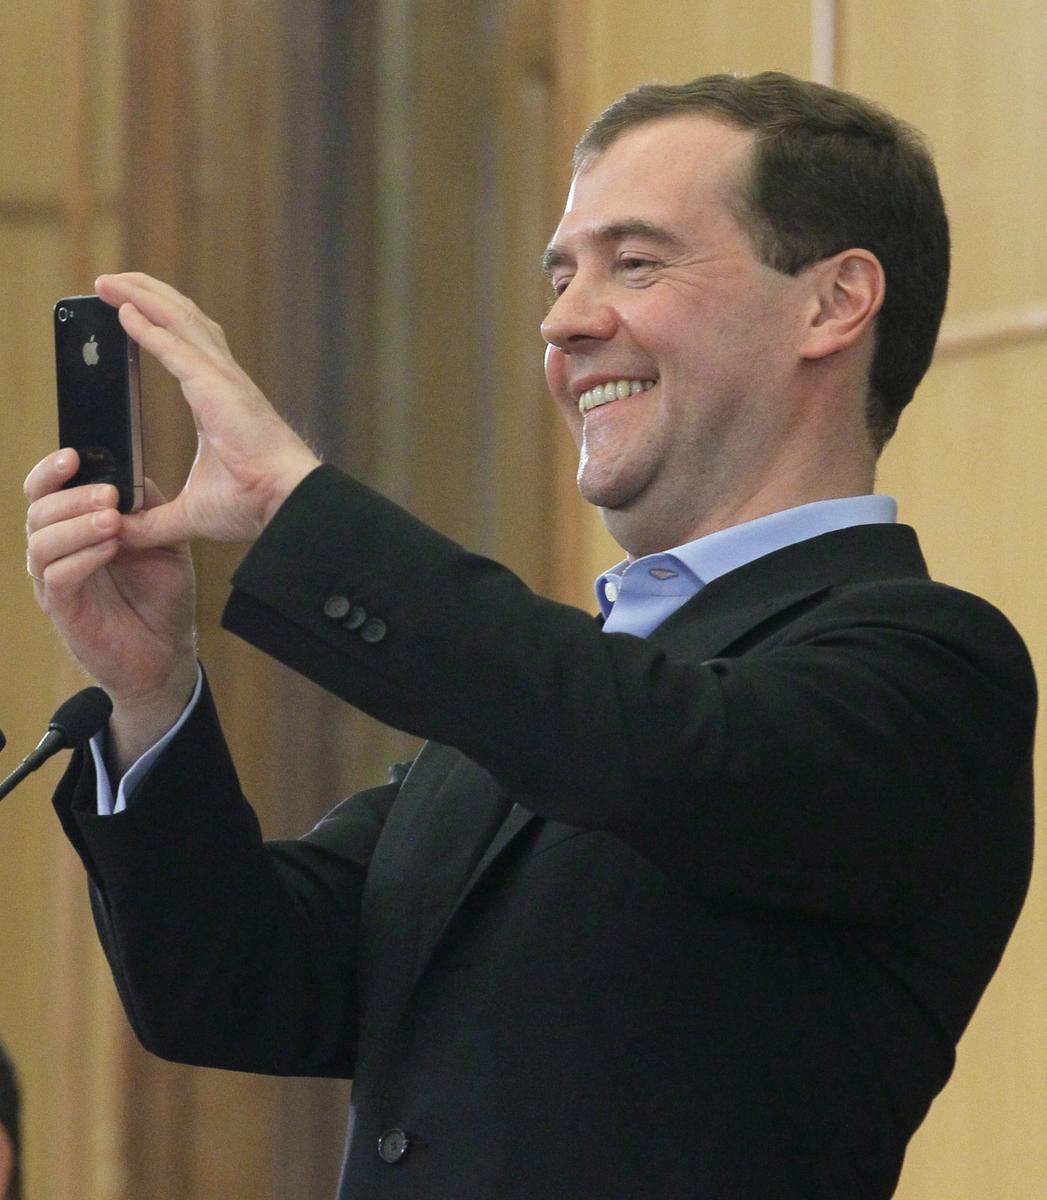 Дмитрий Медведев фотографируется на iPhone во время встречи со студентами факультета журналистики Московского государственного университета в Москве. Фото: EPA/RIA NOVOSTI POOL/EKATERINA SHTUKINA